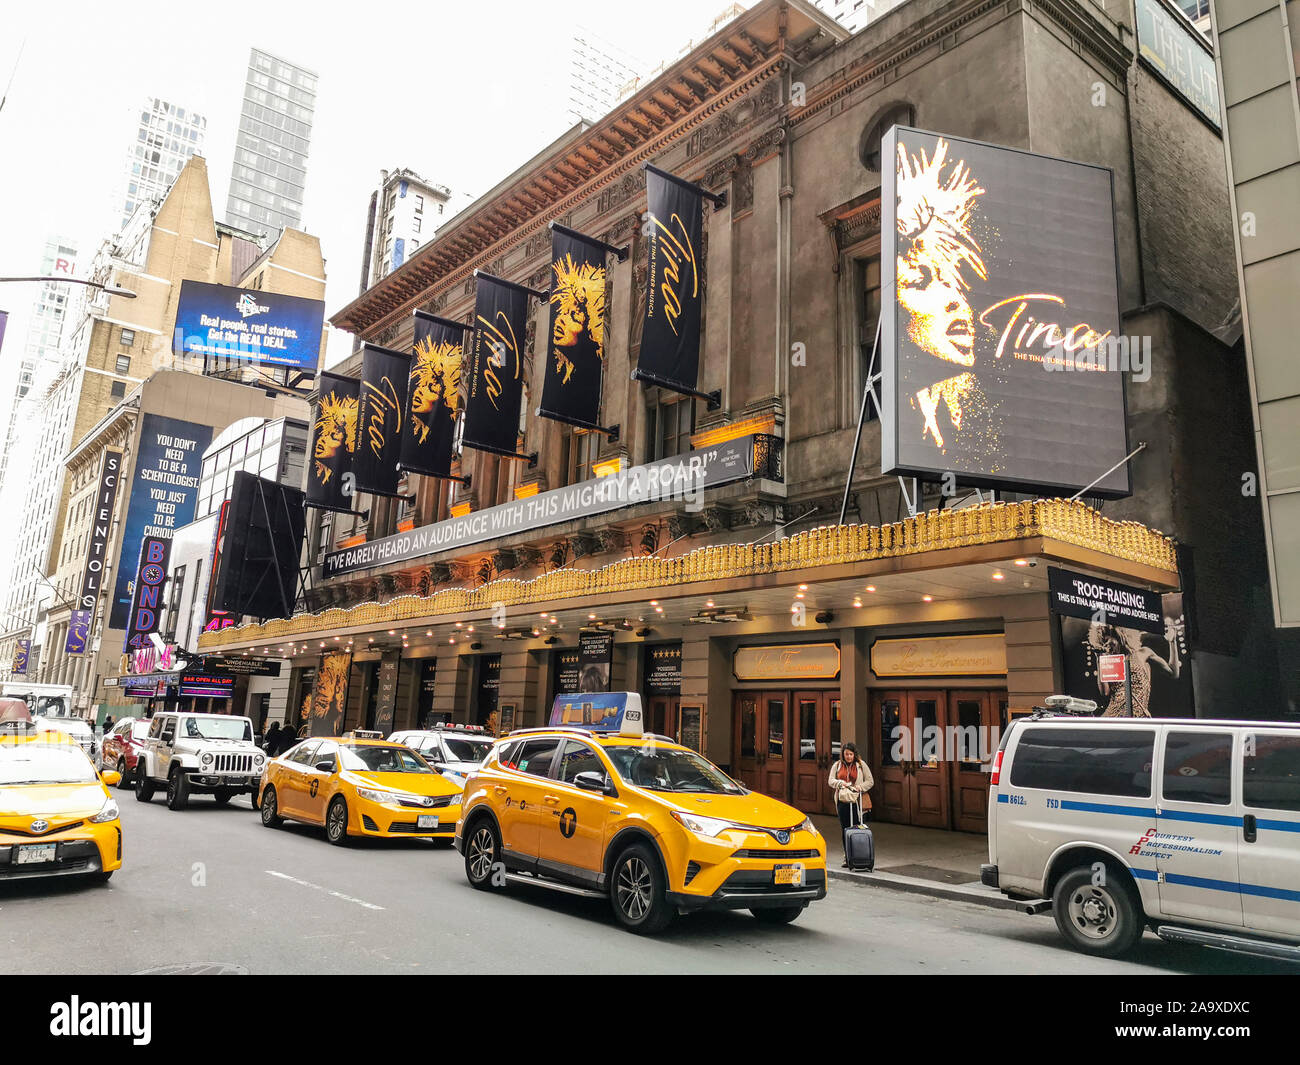 TINA TURNER, THE MUSICAL , NEW YORK Stock Photo